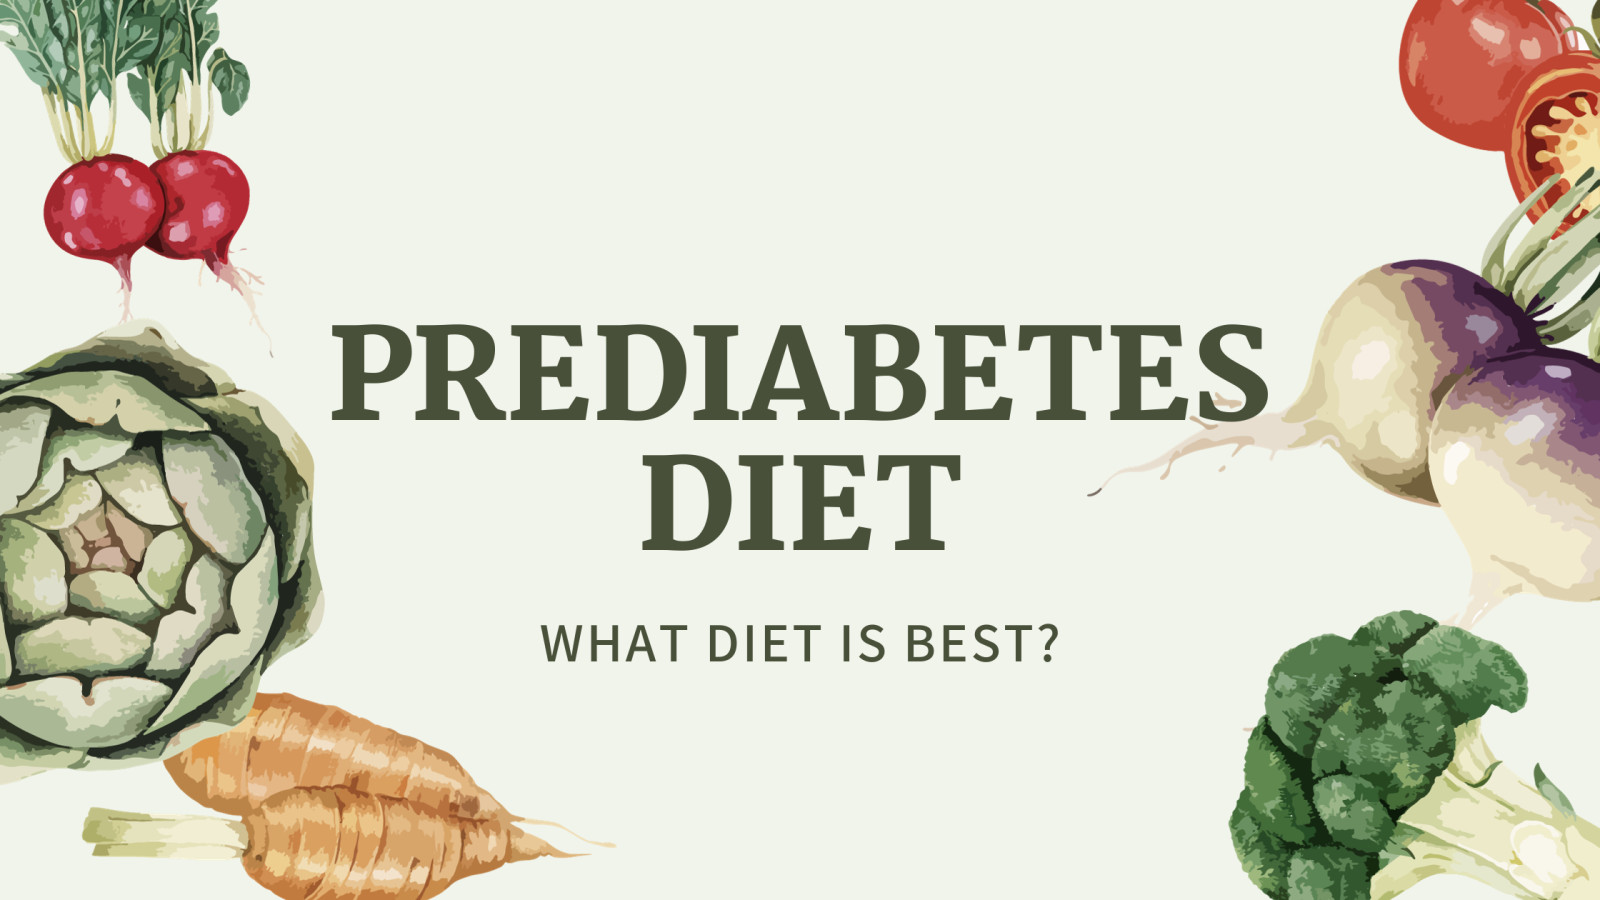 Prediabetes Diet: What Diet Is Best?